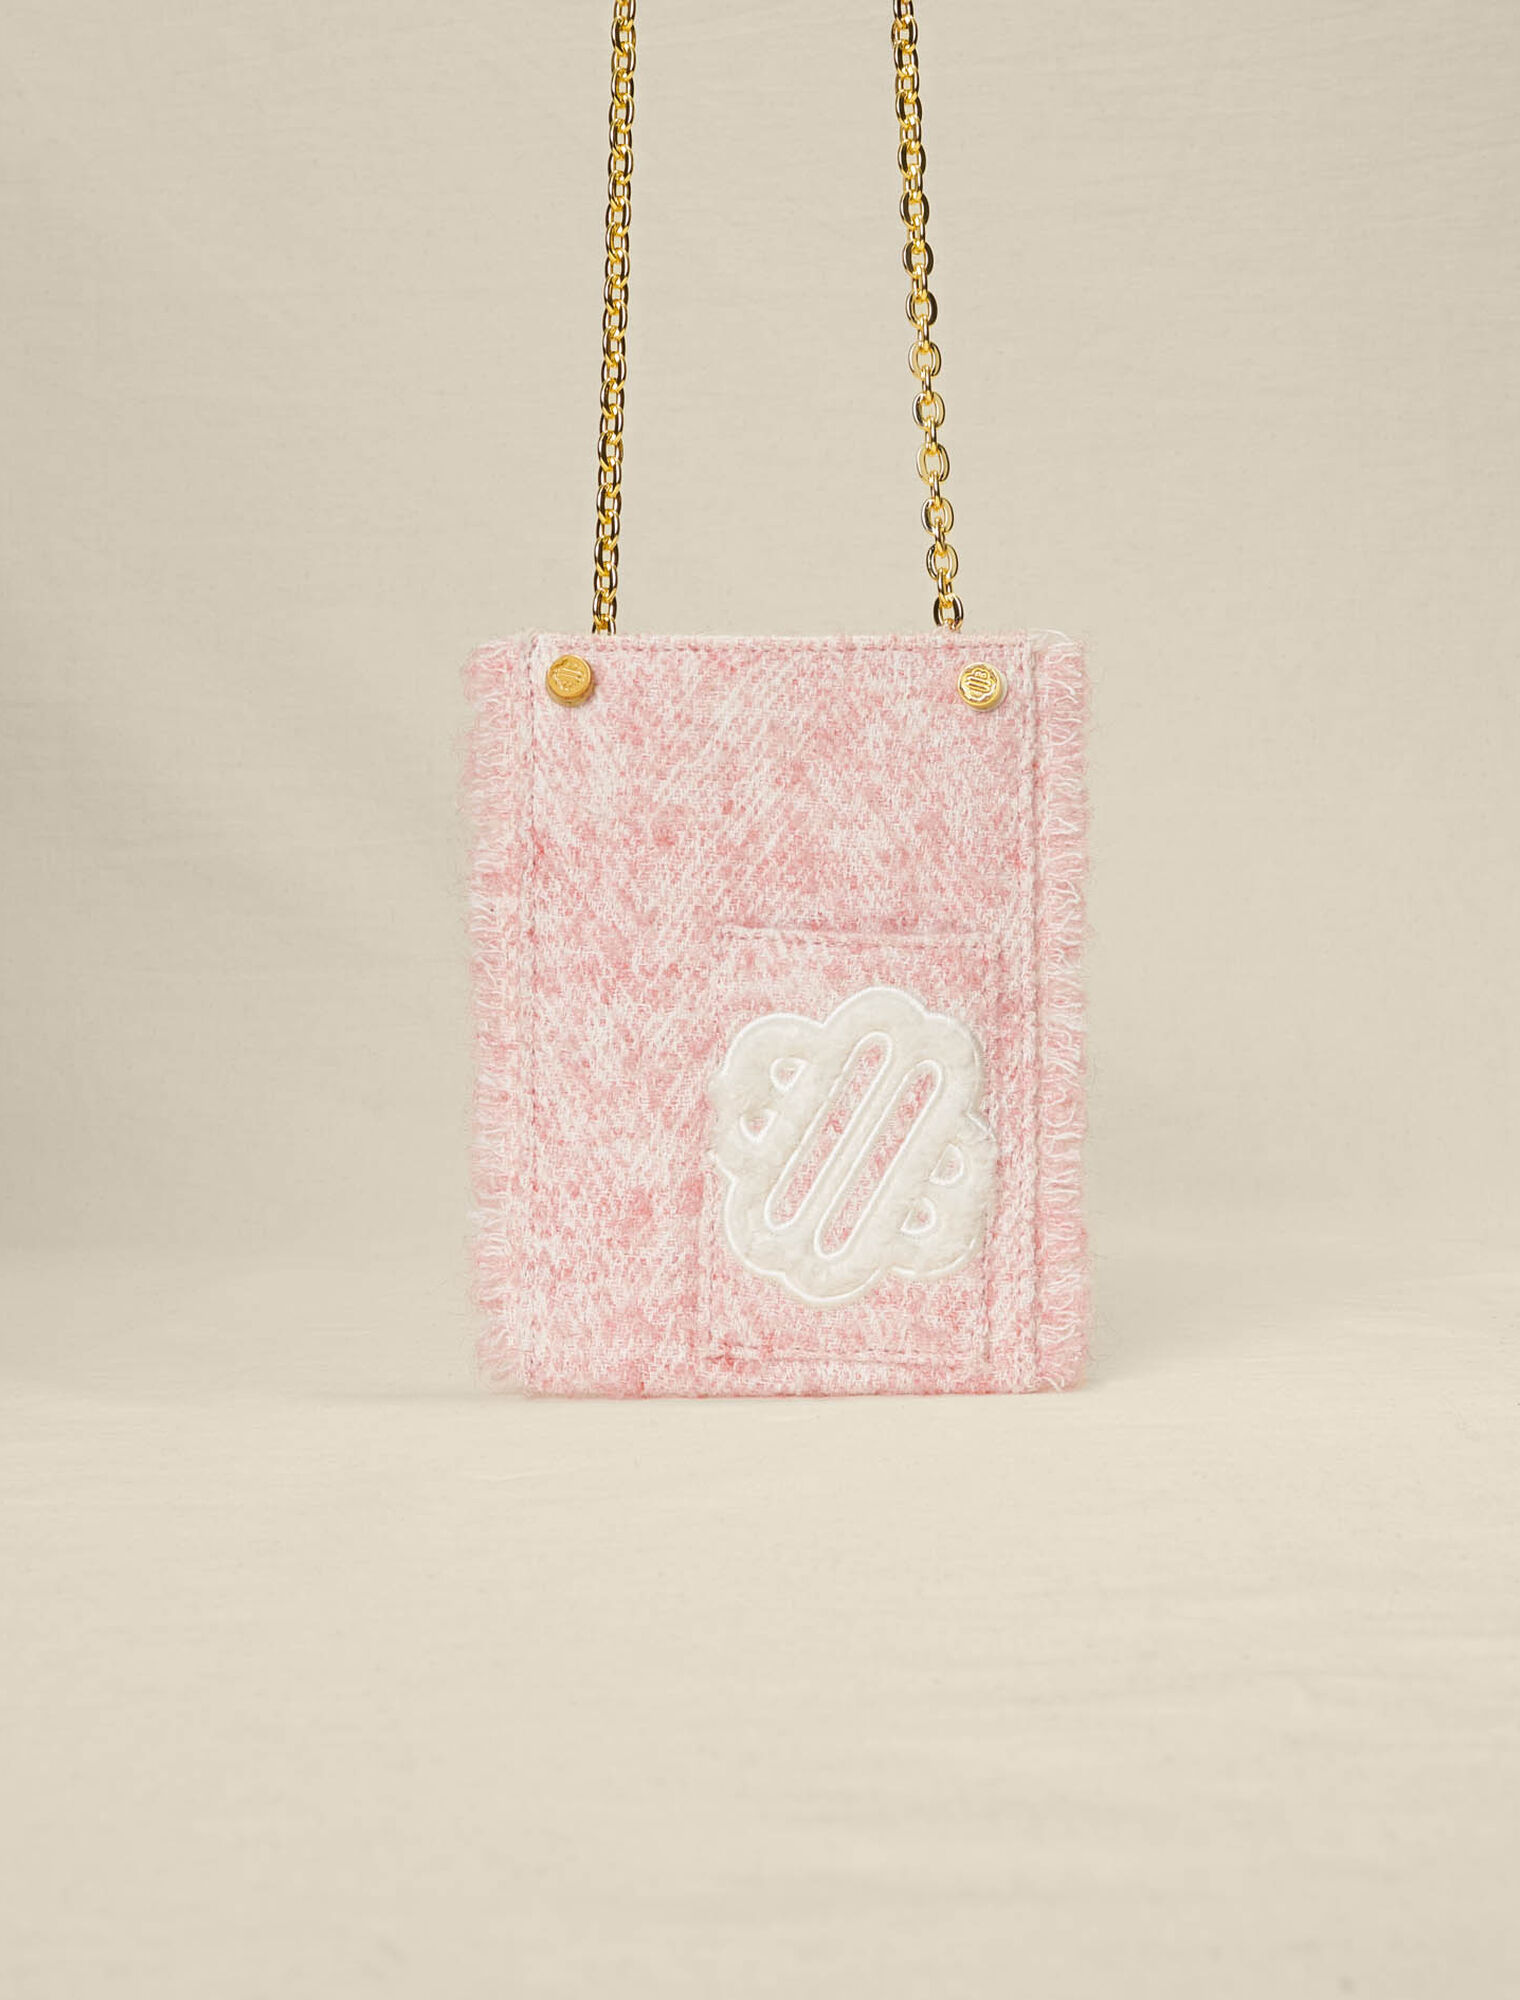 Pink tweed-effect phone bag